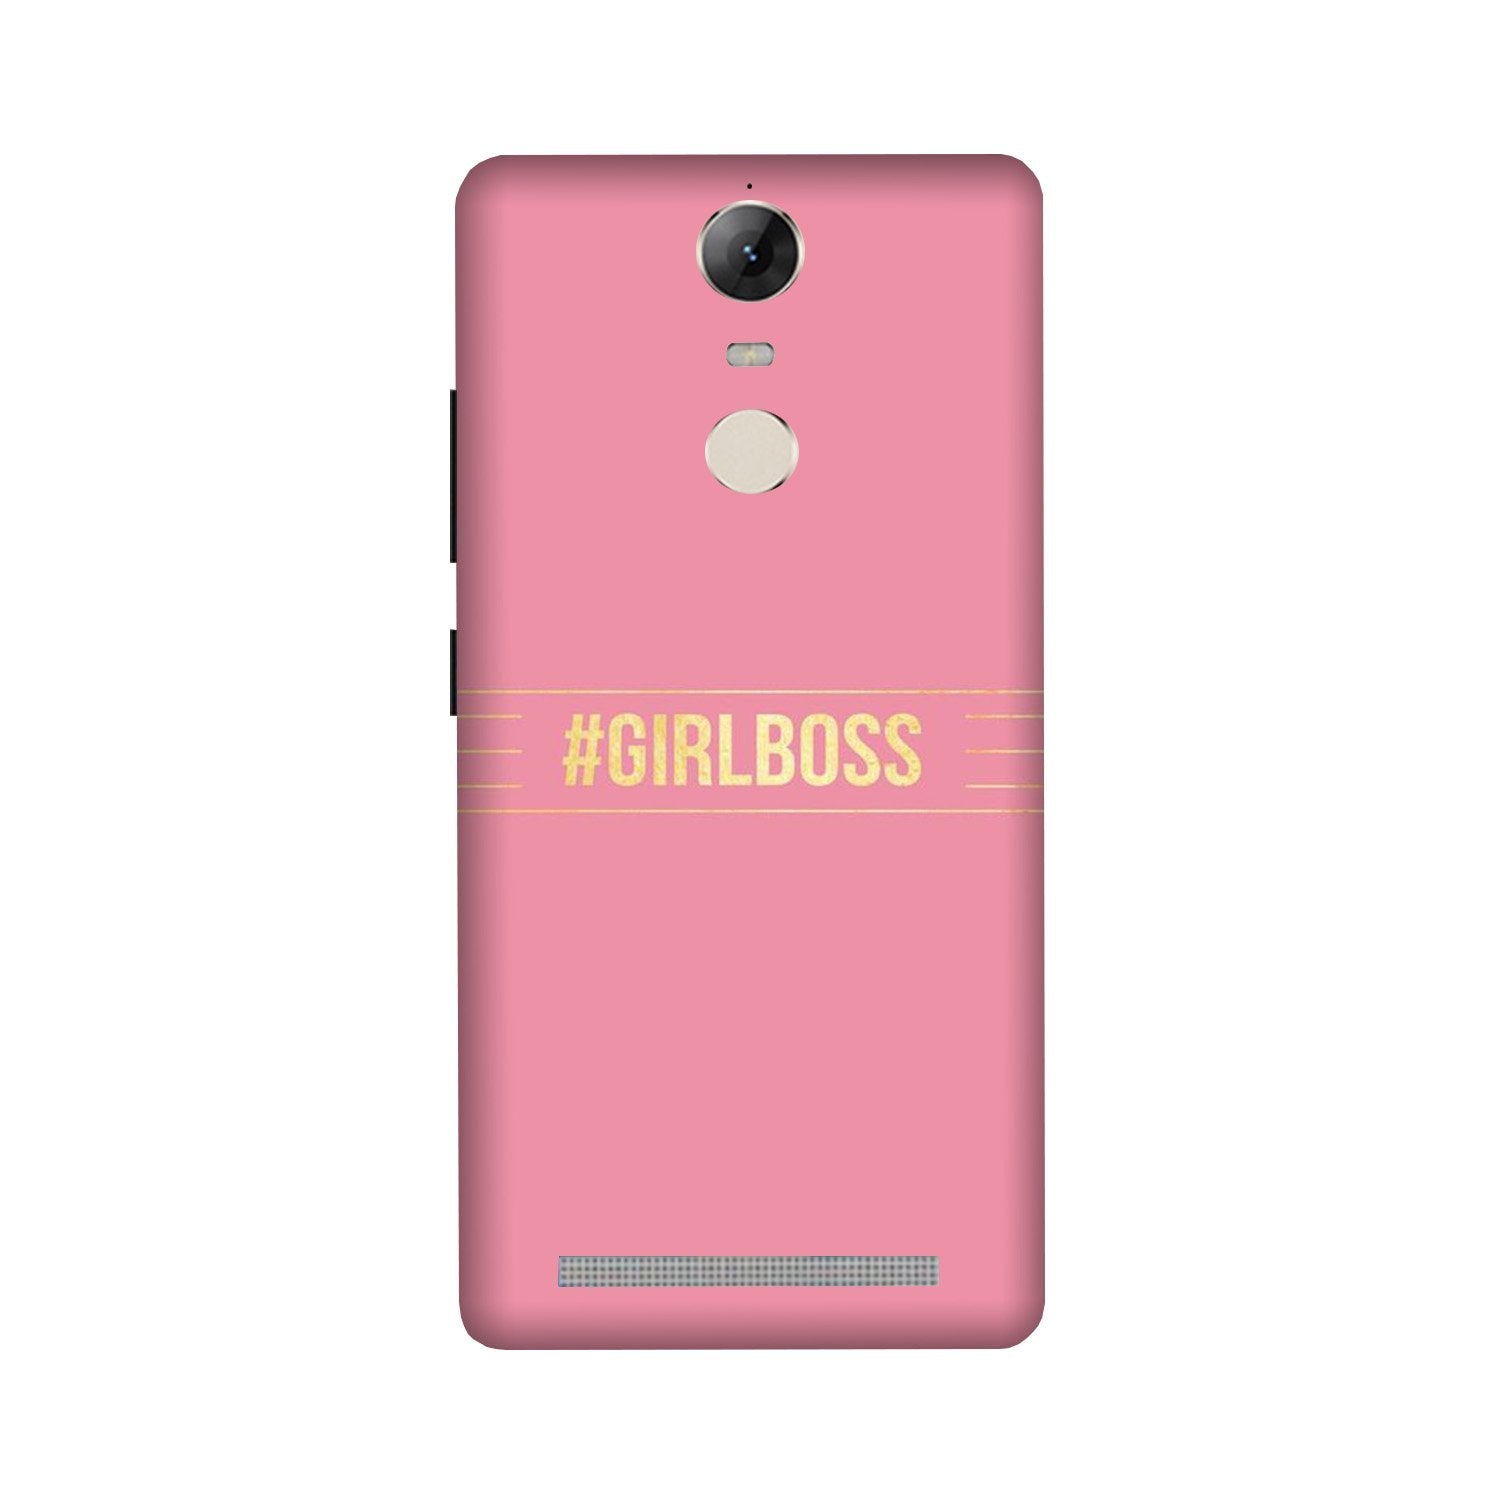 Girl Boss Pink Case for Lenovo Vibe K5 Note (Design No. 263)